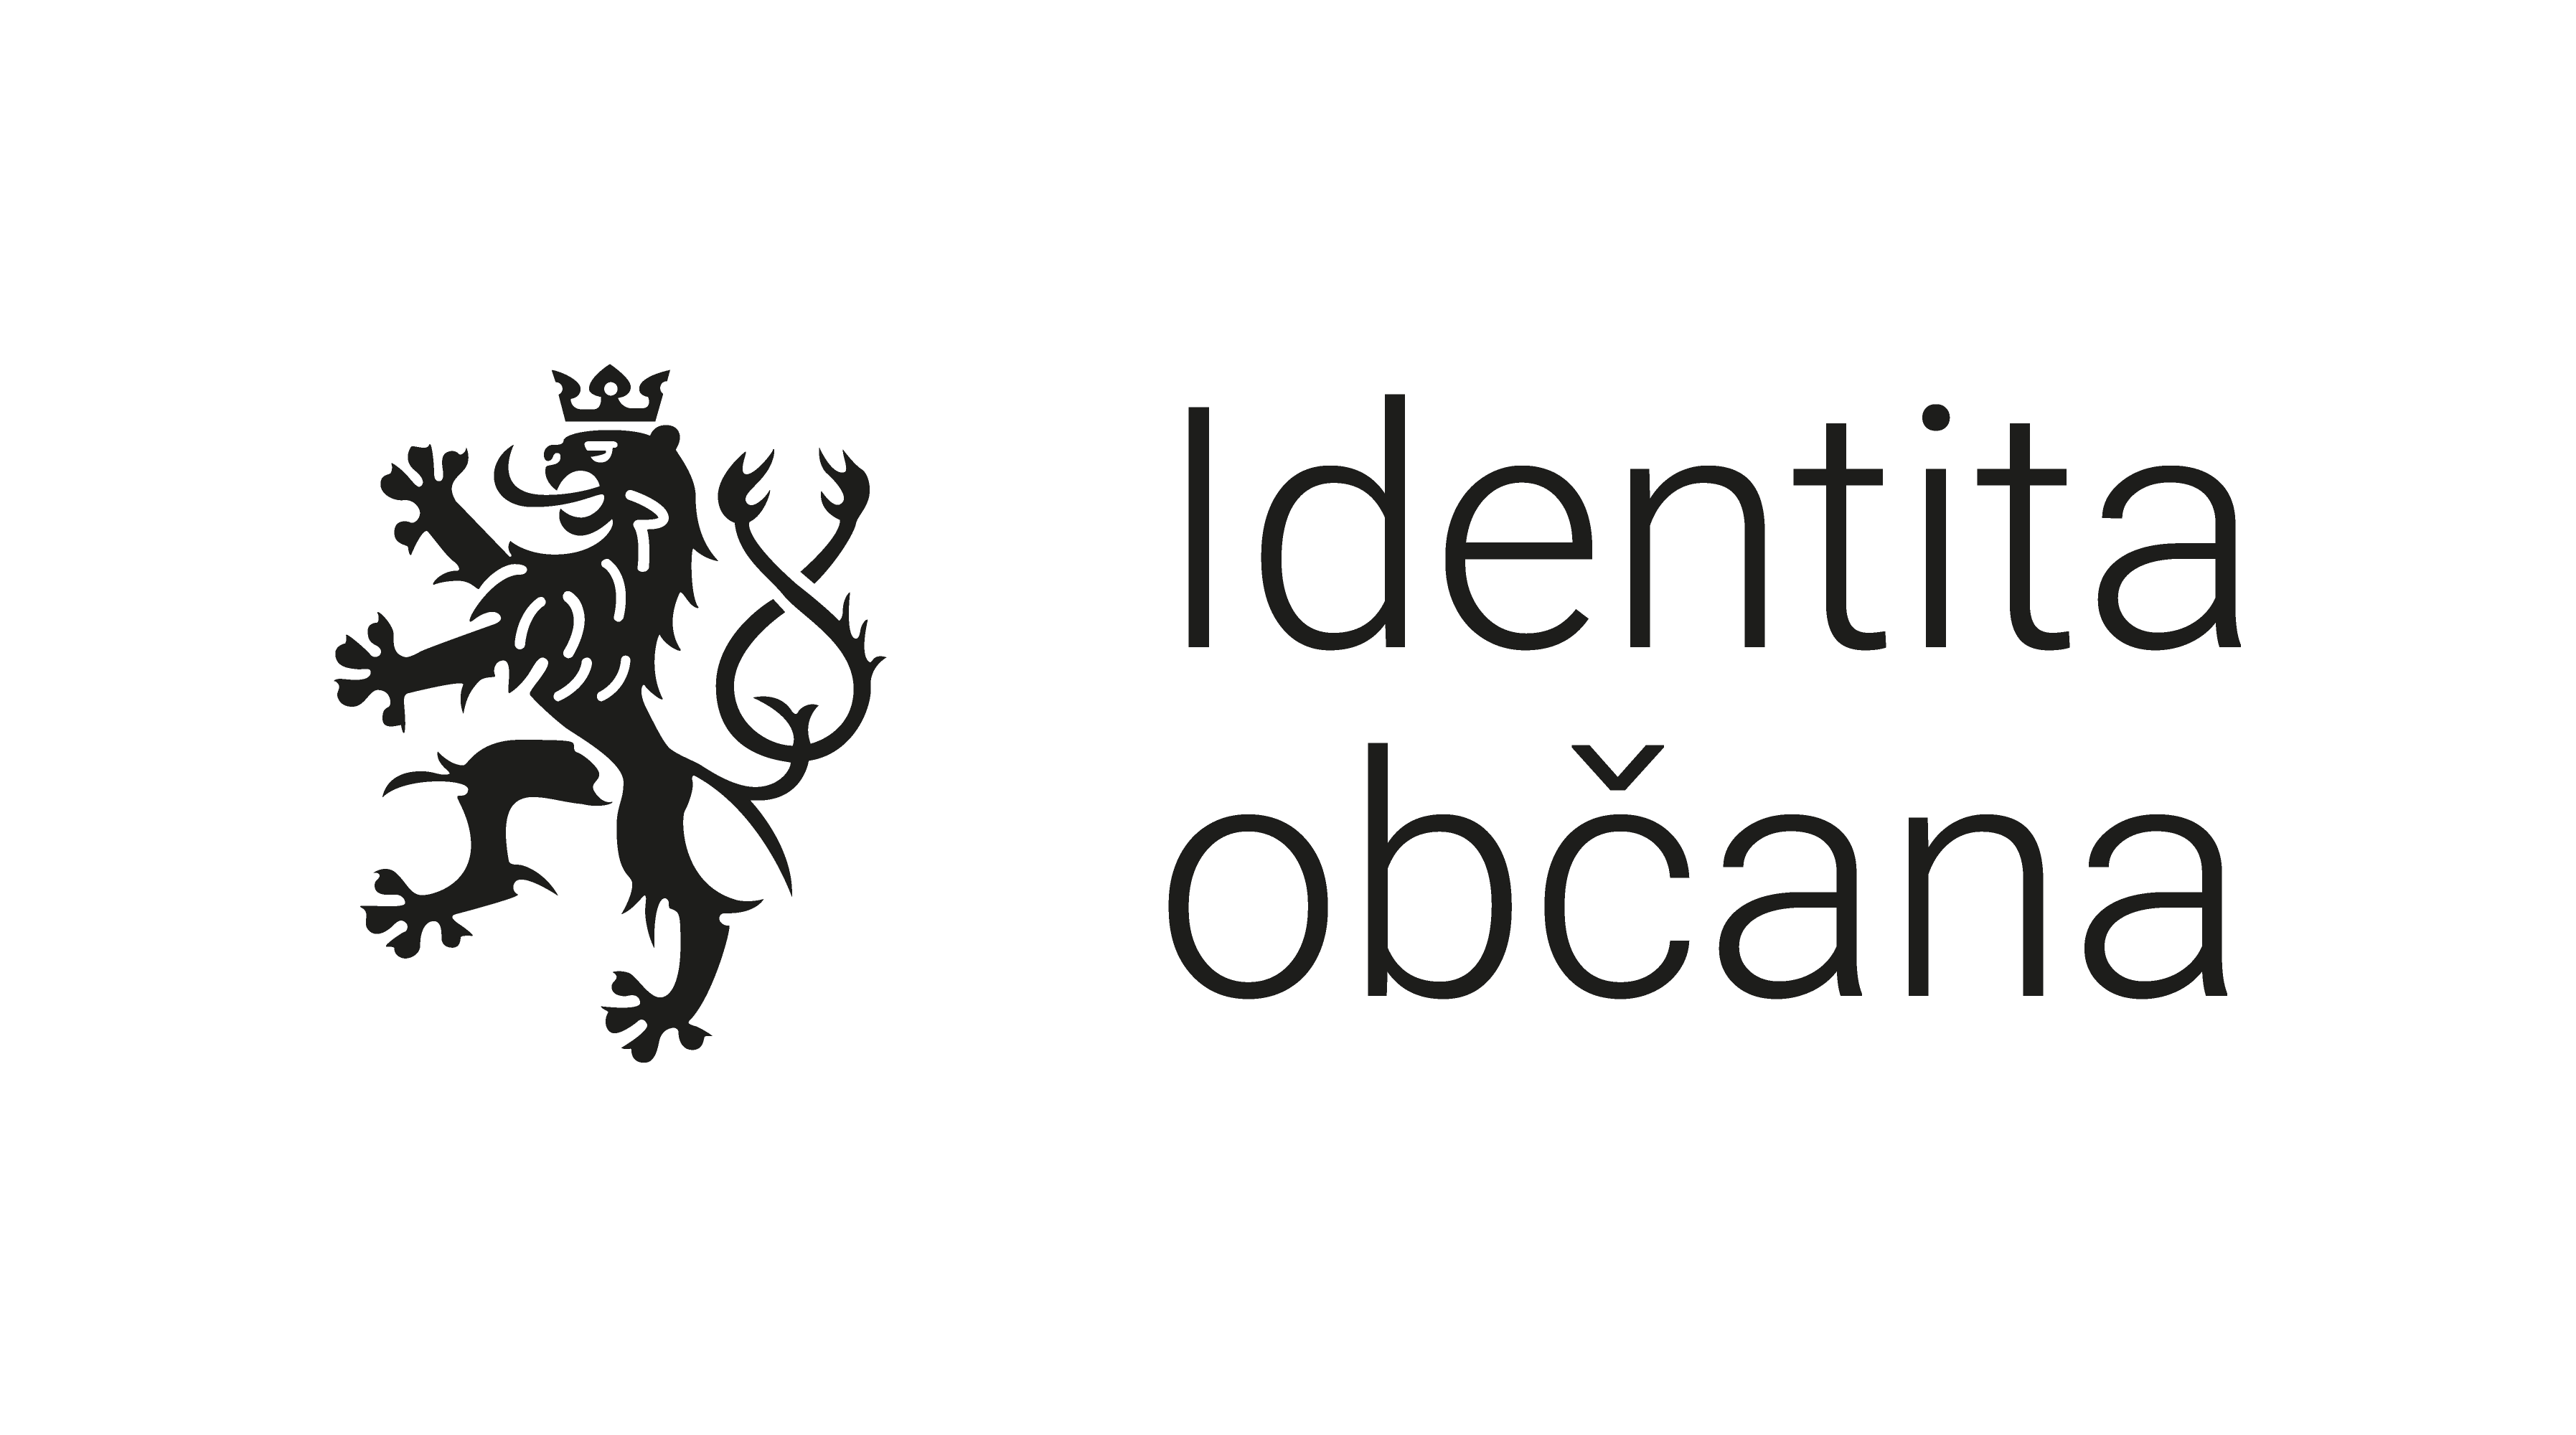 Logo Identity občana ve formátu černý pozitiv